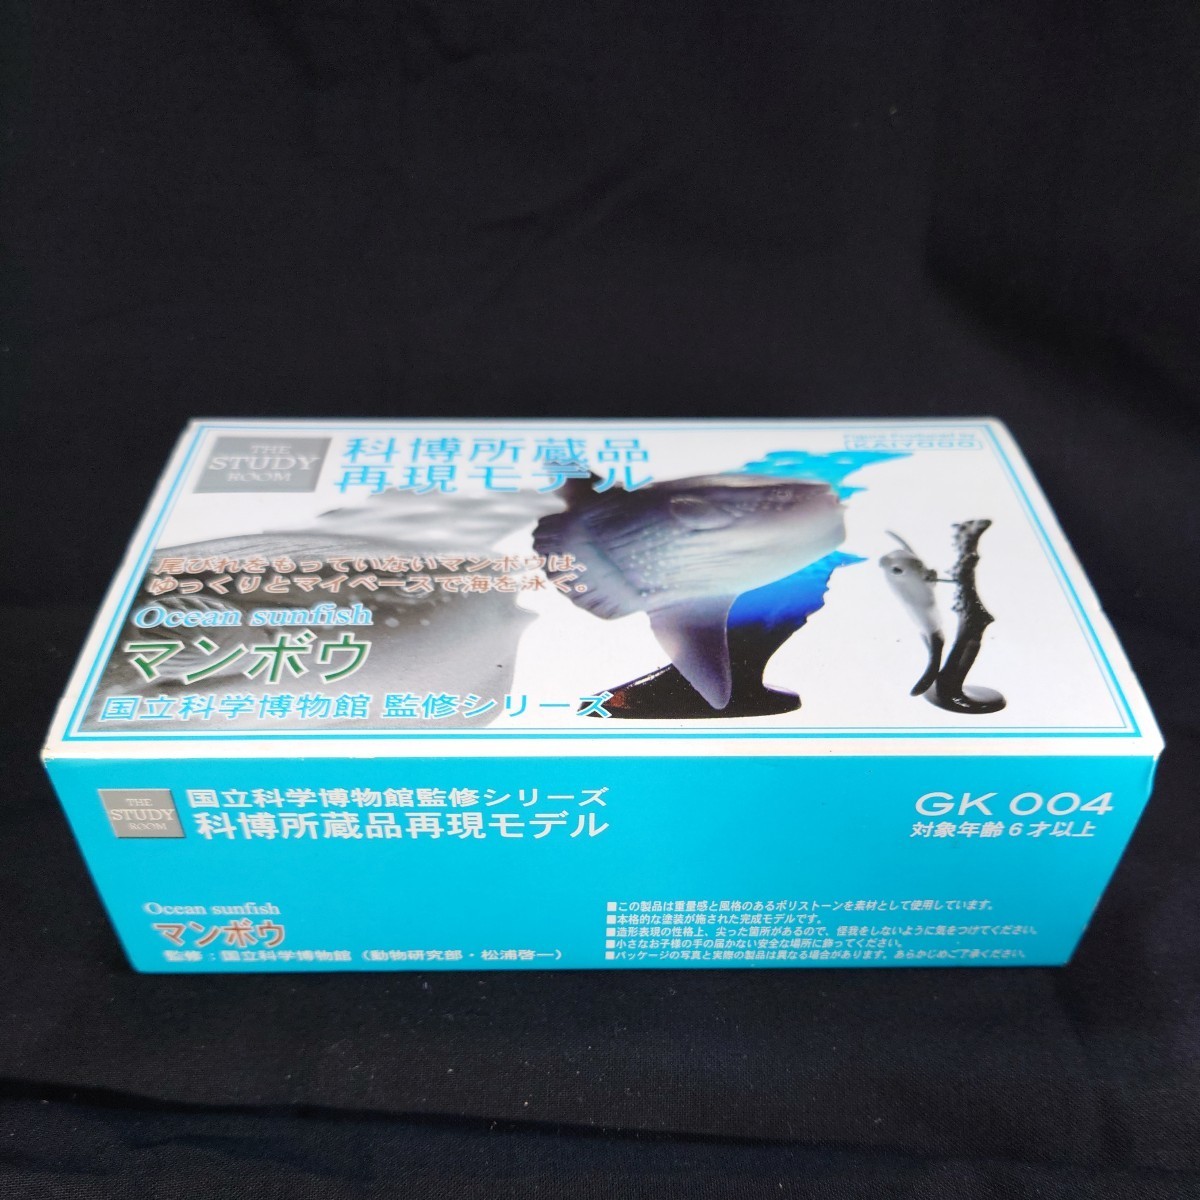 海洋堂 科博所蔵品 再現モデル マンボウ 国立科学博物館 監修シリーズ GK004 Ocean sunfish KAIYODO フィギア _画像7